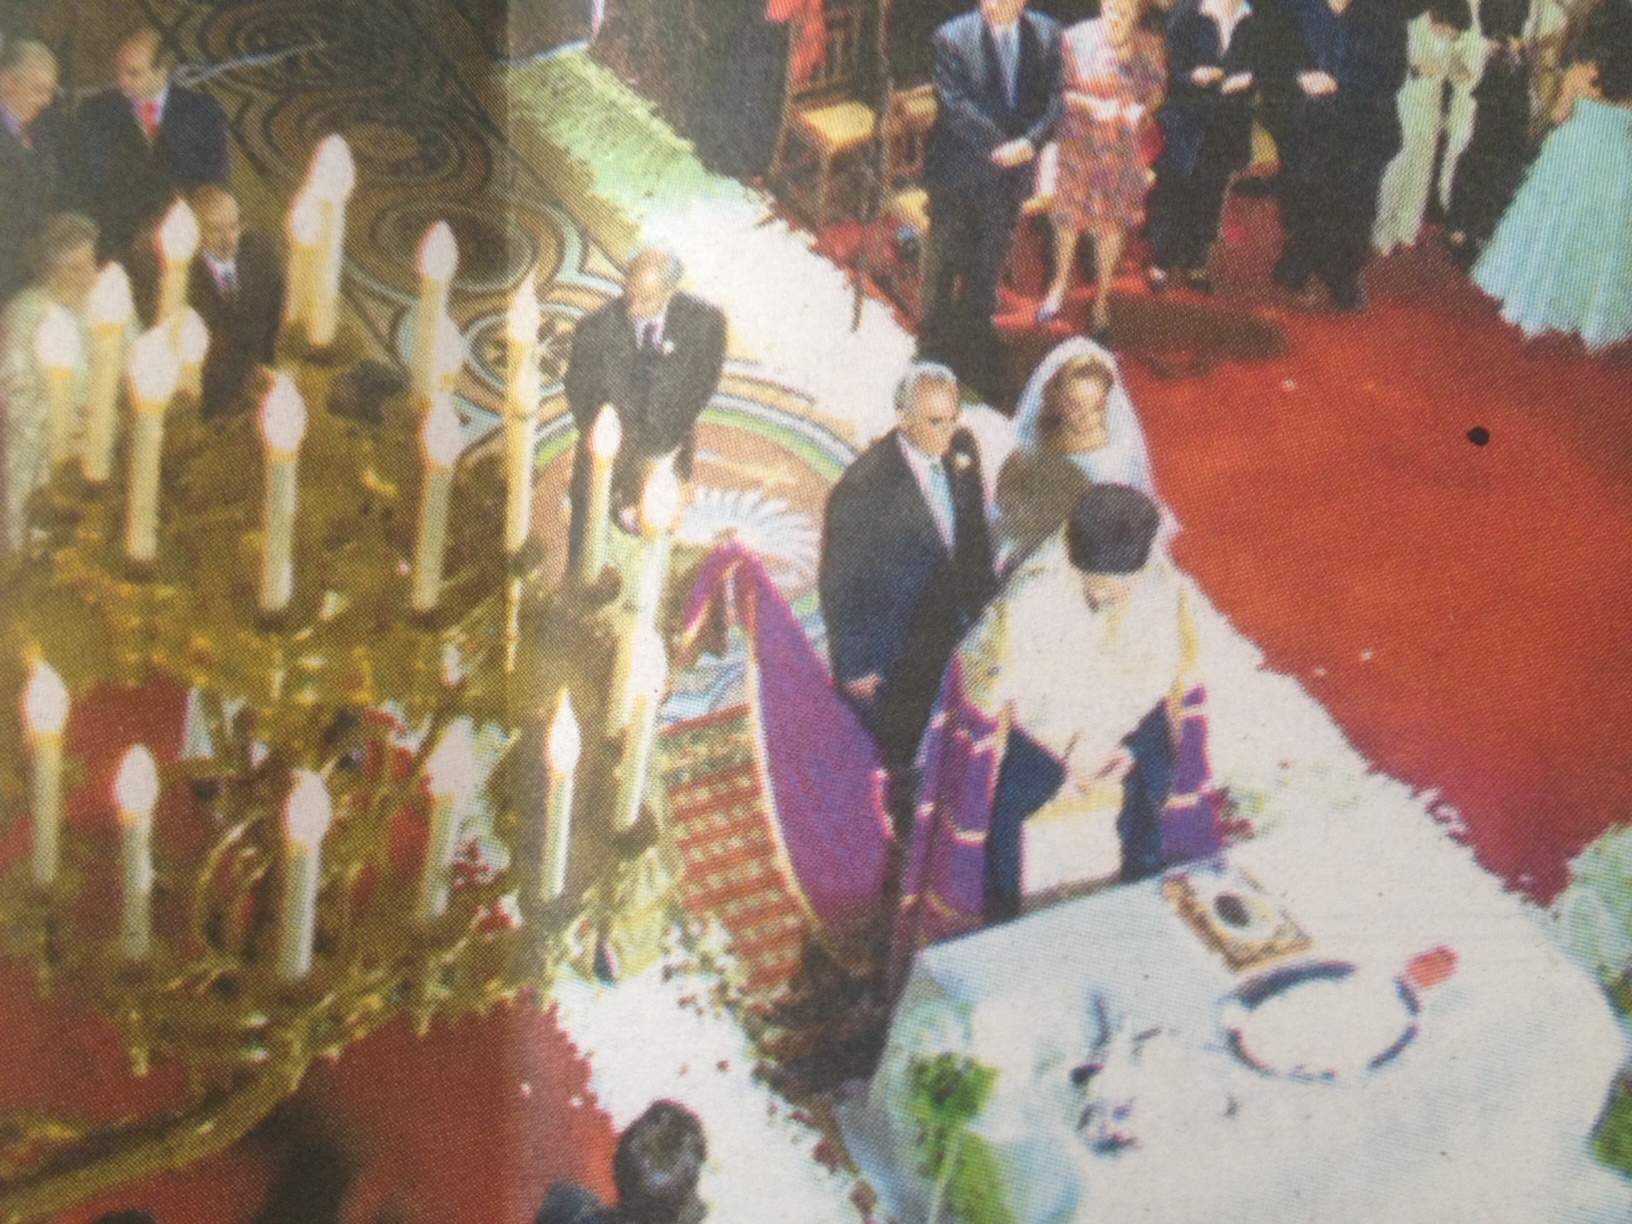 Βίκυ Σταμάτη και Άκης Τσοχατζόπουλος παντεύτηκαν το 2004 μεταξύ συγγενών και φίλων - ΦΩΤΟΓΡΑΦΙΑ ΕΦΗΜΕΡΙΔΑ REAL NEWS